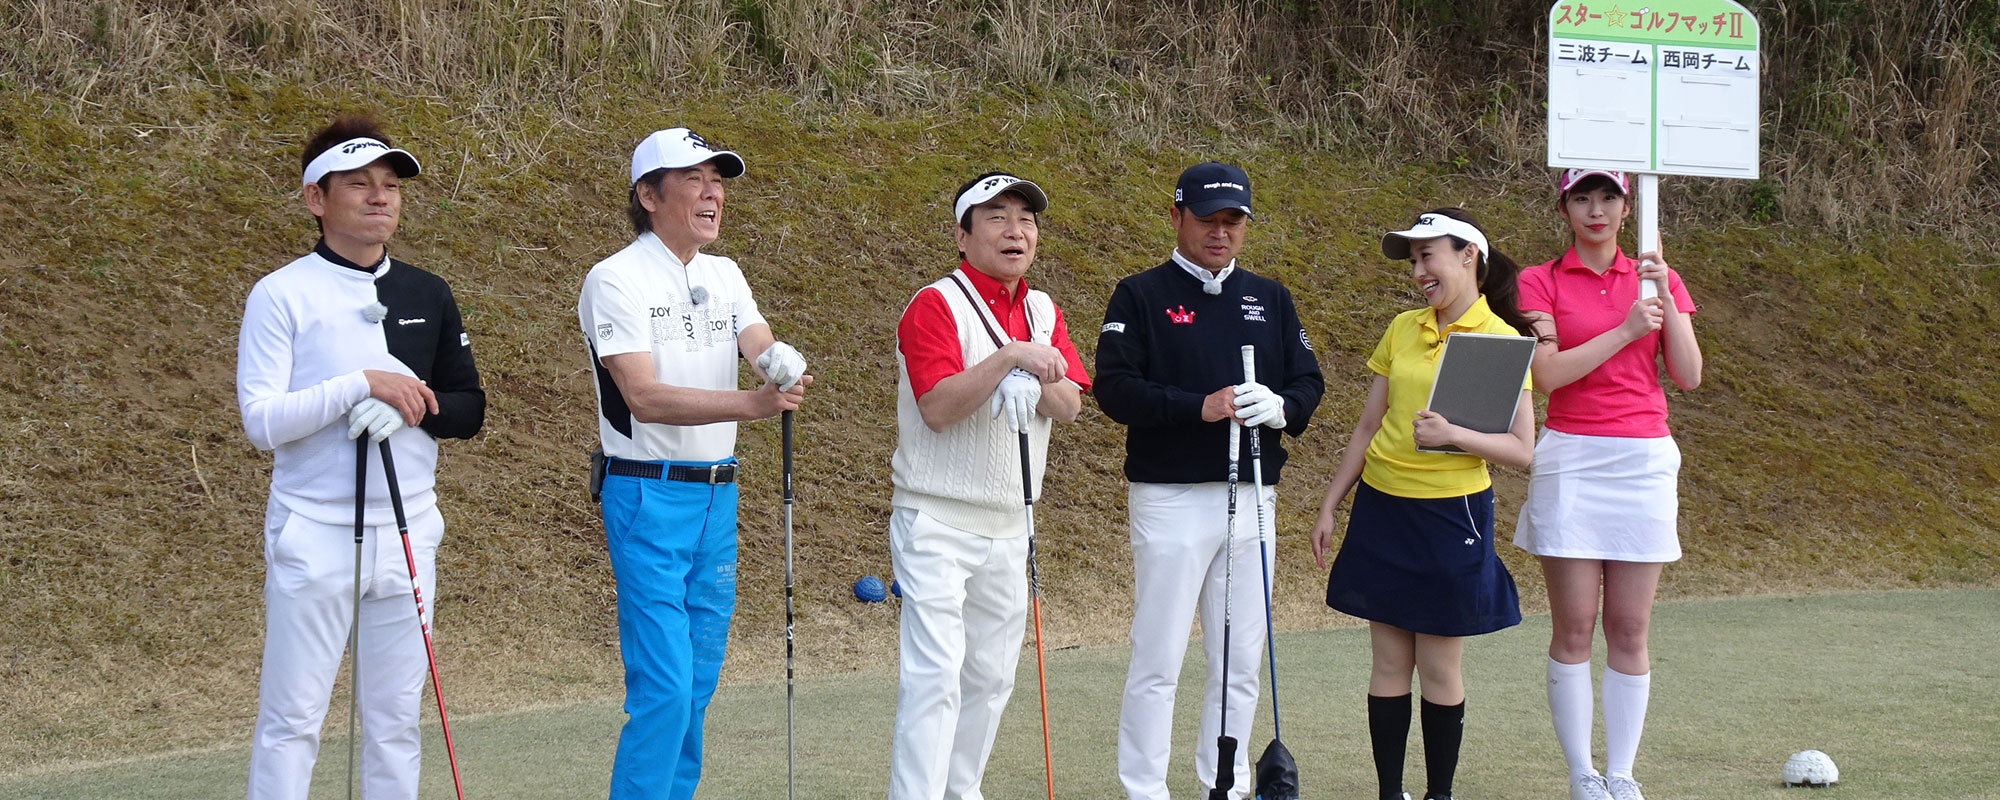 第20シリーズ後半戦 – スター☆ゴルフマッチII 芸能界やスポーツ界のゴルフ好き同士がペアを組んで真剣勝負